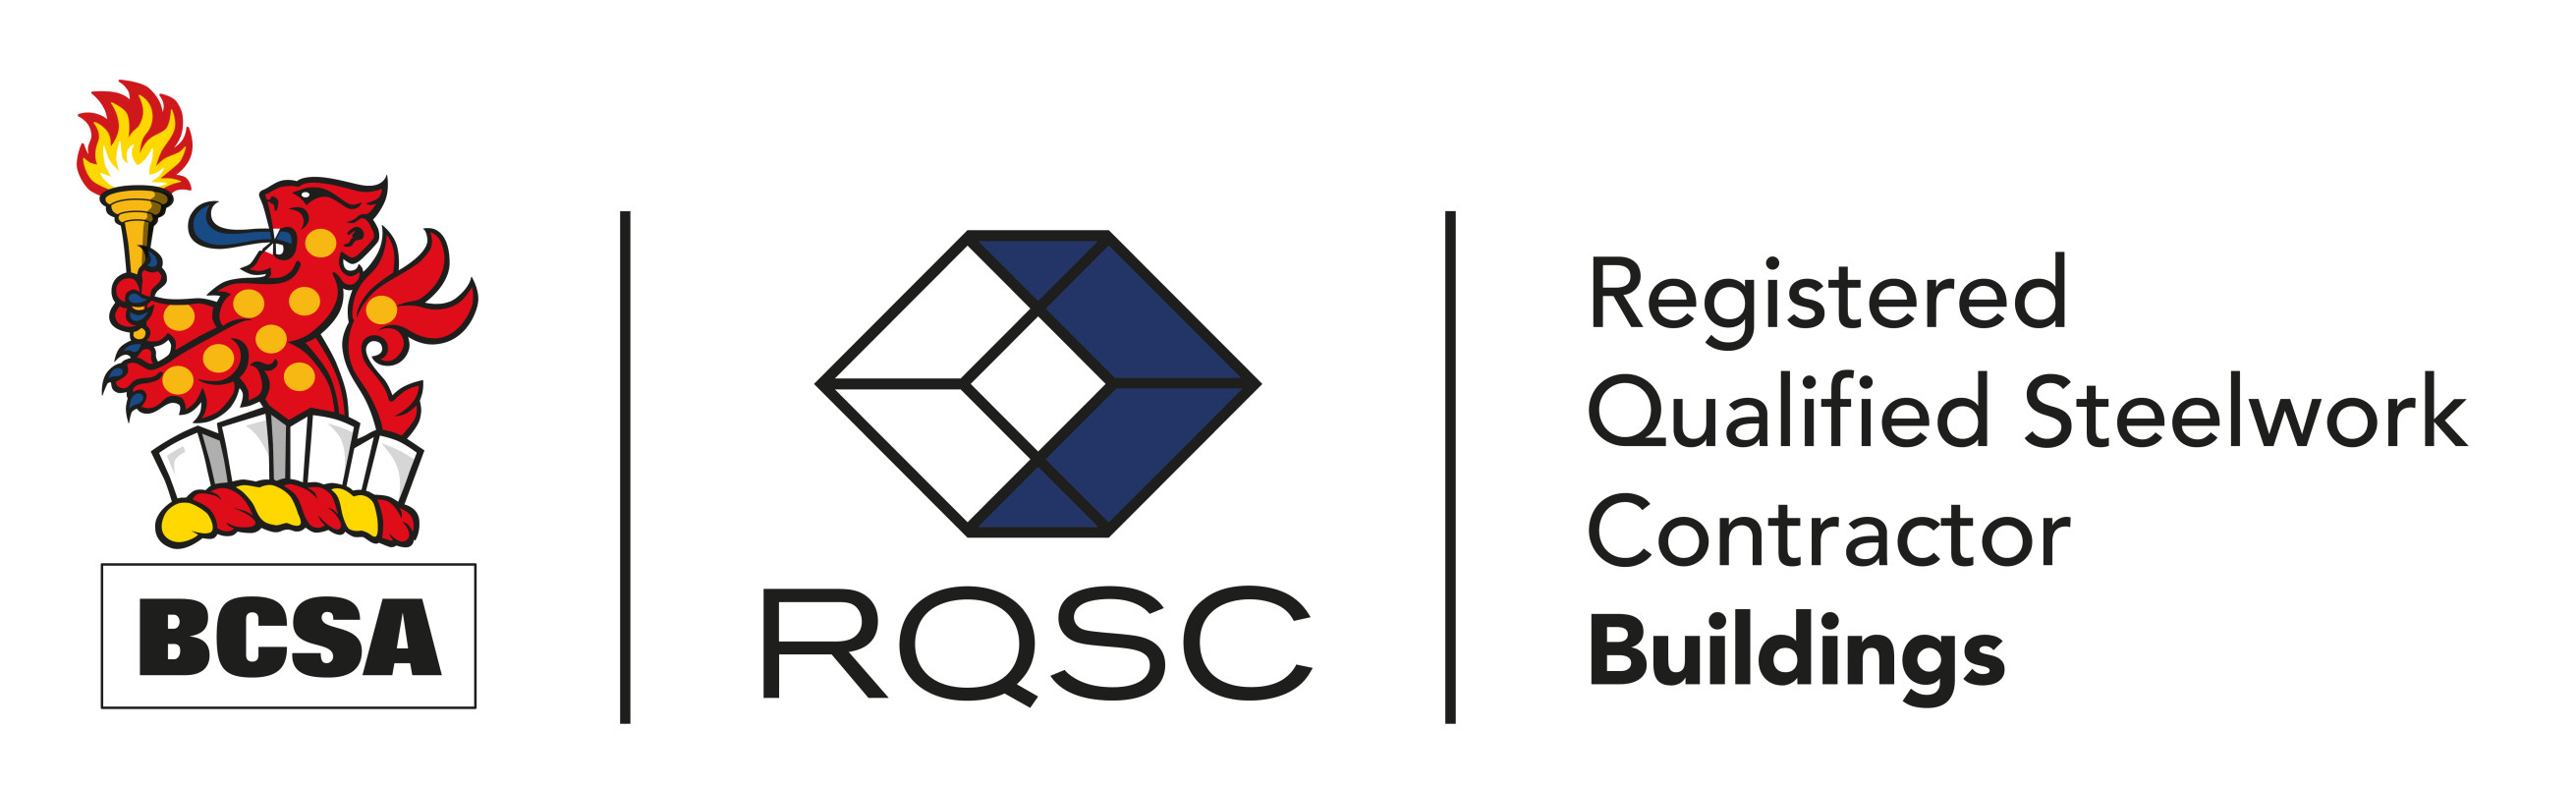 BCSA RQSC Buildings Contractor logo